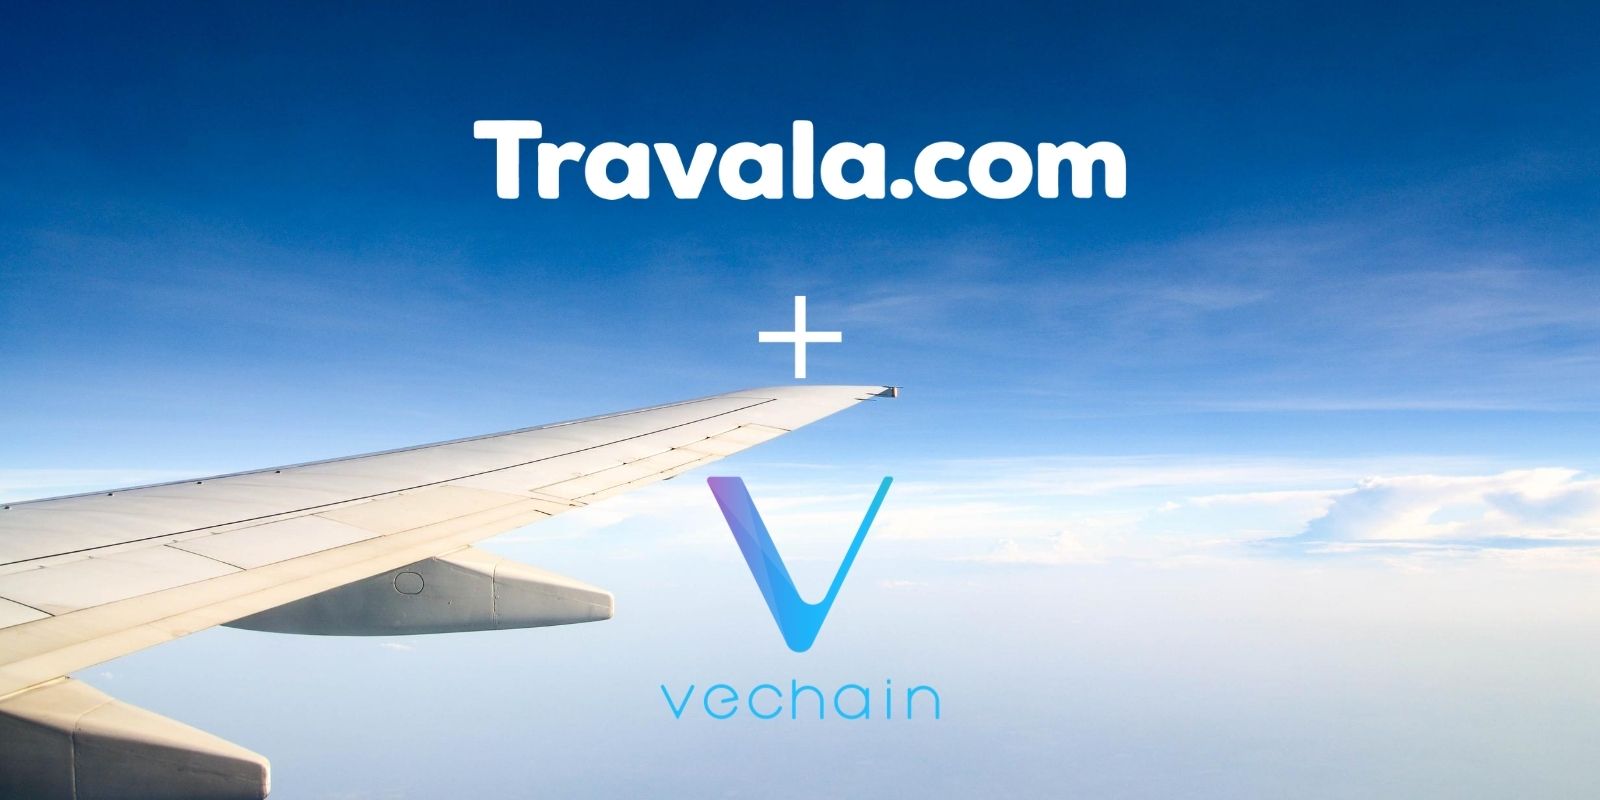 Le VET de VeChain débarque sur Travala.com comme option de paiement